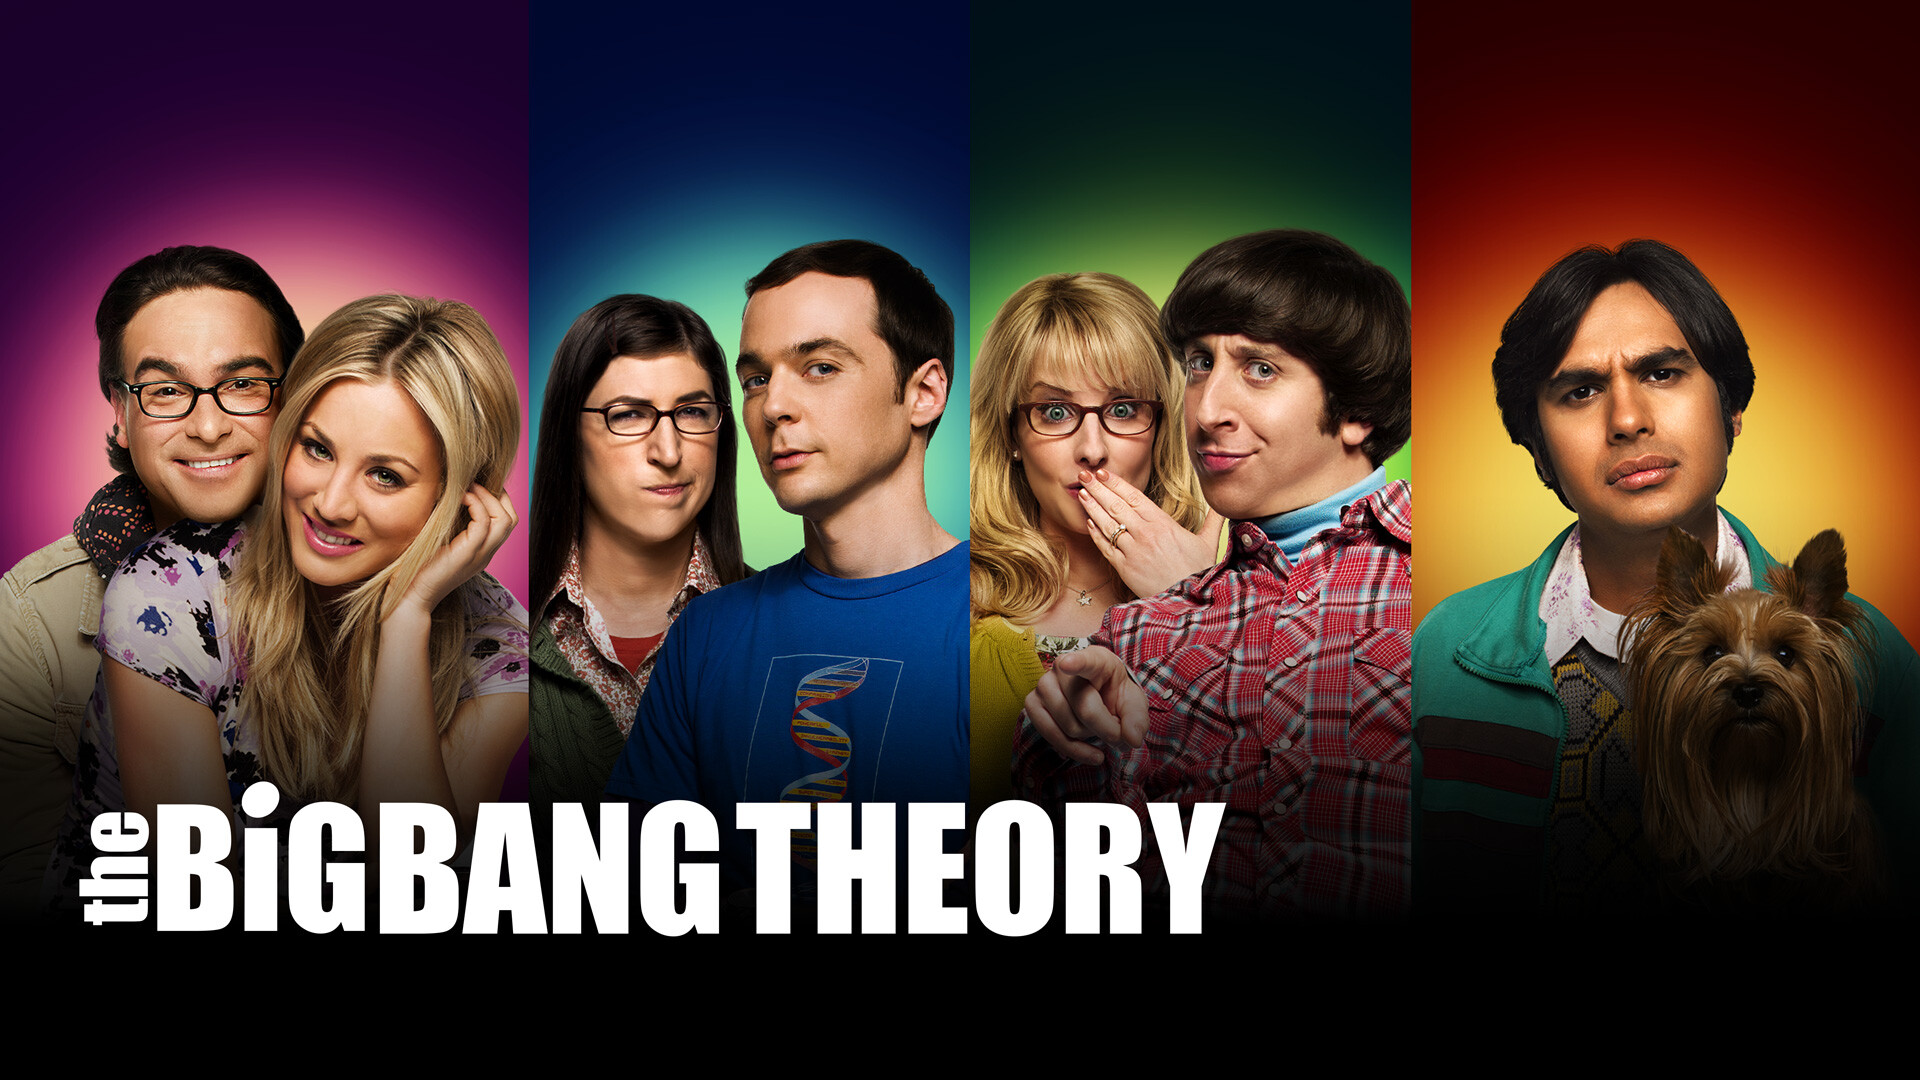 The Big Bang Theory, TV series, Amy Farrah Fowler, Bernadette Rostenkowski, 1920x1080 Full HD Desktop